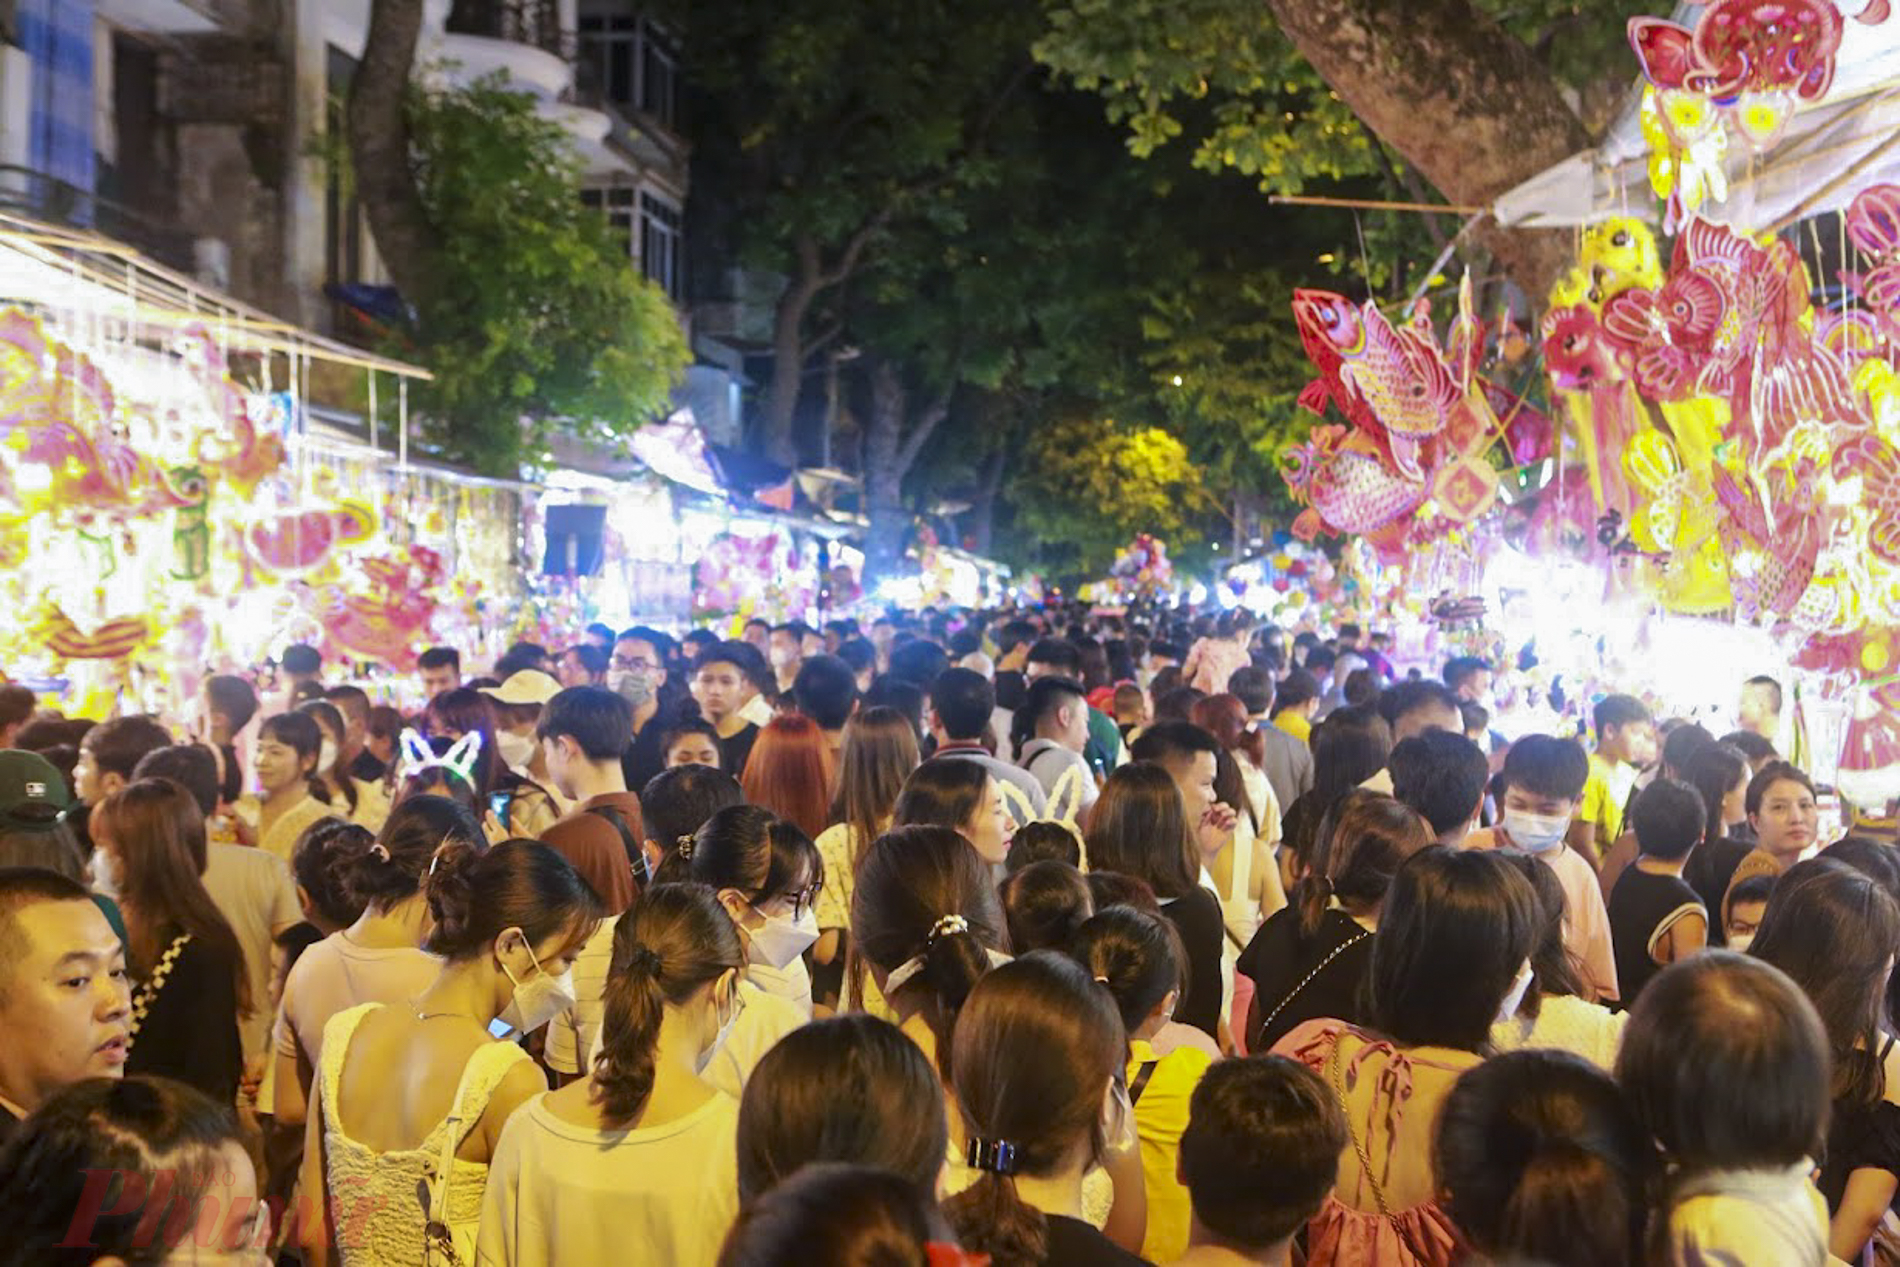 con phố Hàng Mã cũng đón biển người chen chúc nhau đến vui chơi, mua sắm cũng như check-in